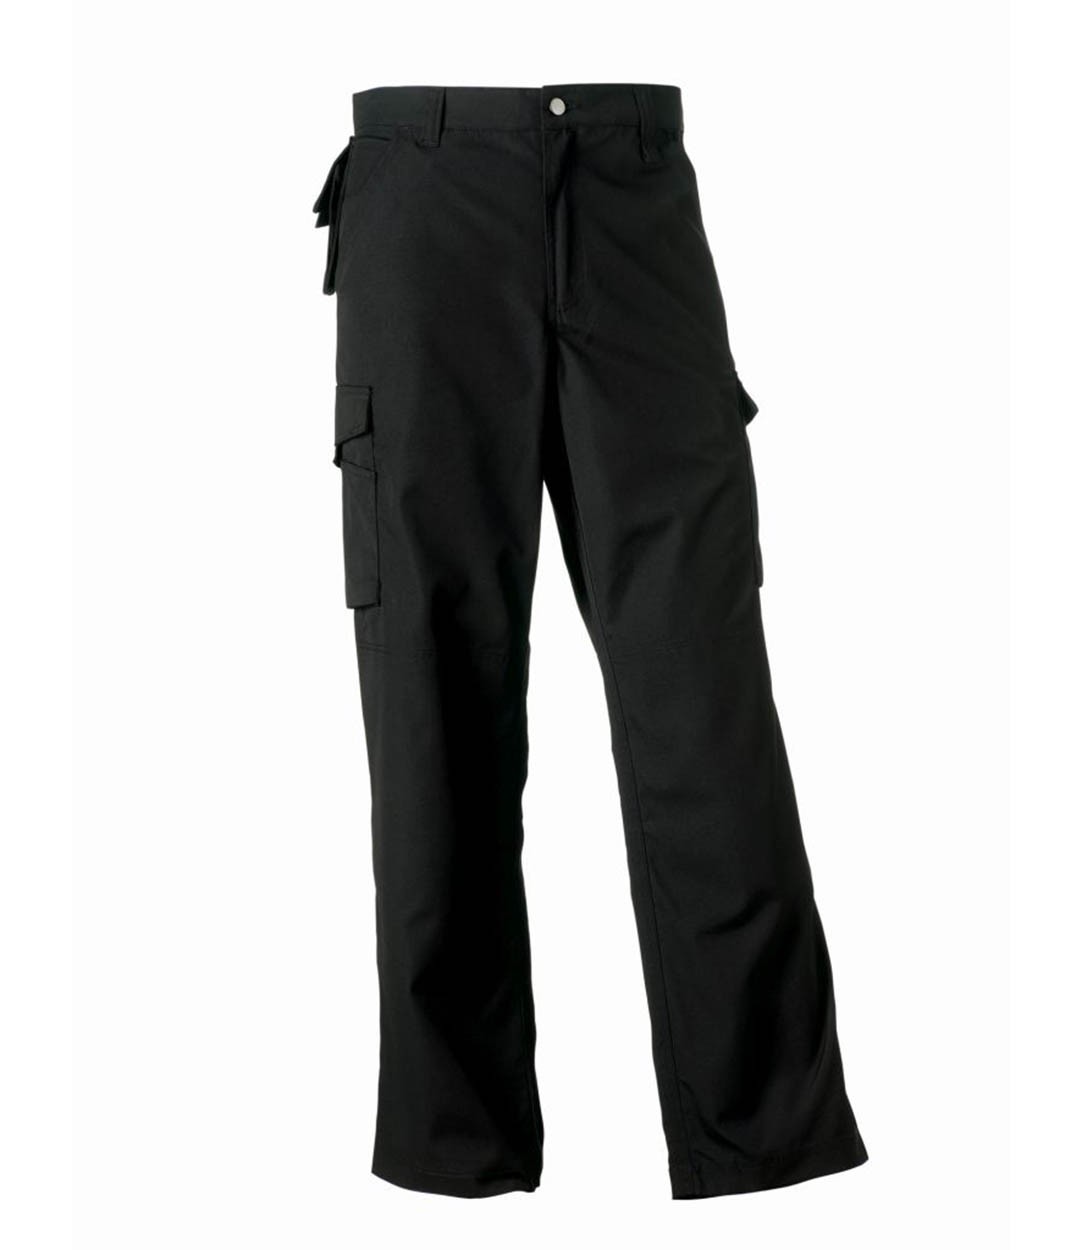 Russell Workwear 015M Heavy Duty Workwear Trousers Black - Work Trousers -  Workwear - Best Workwear